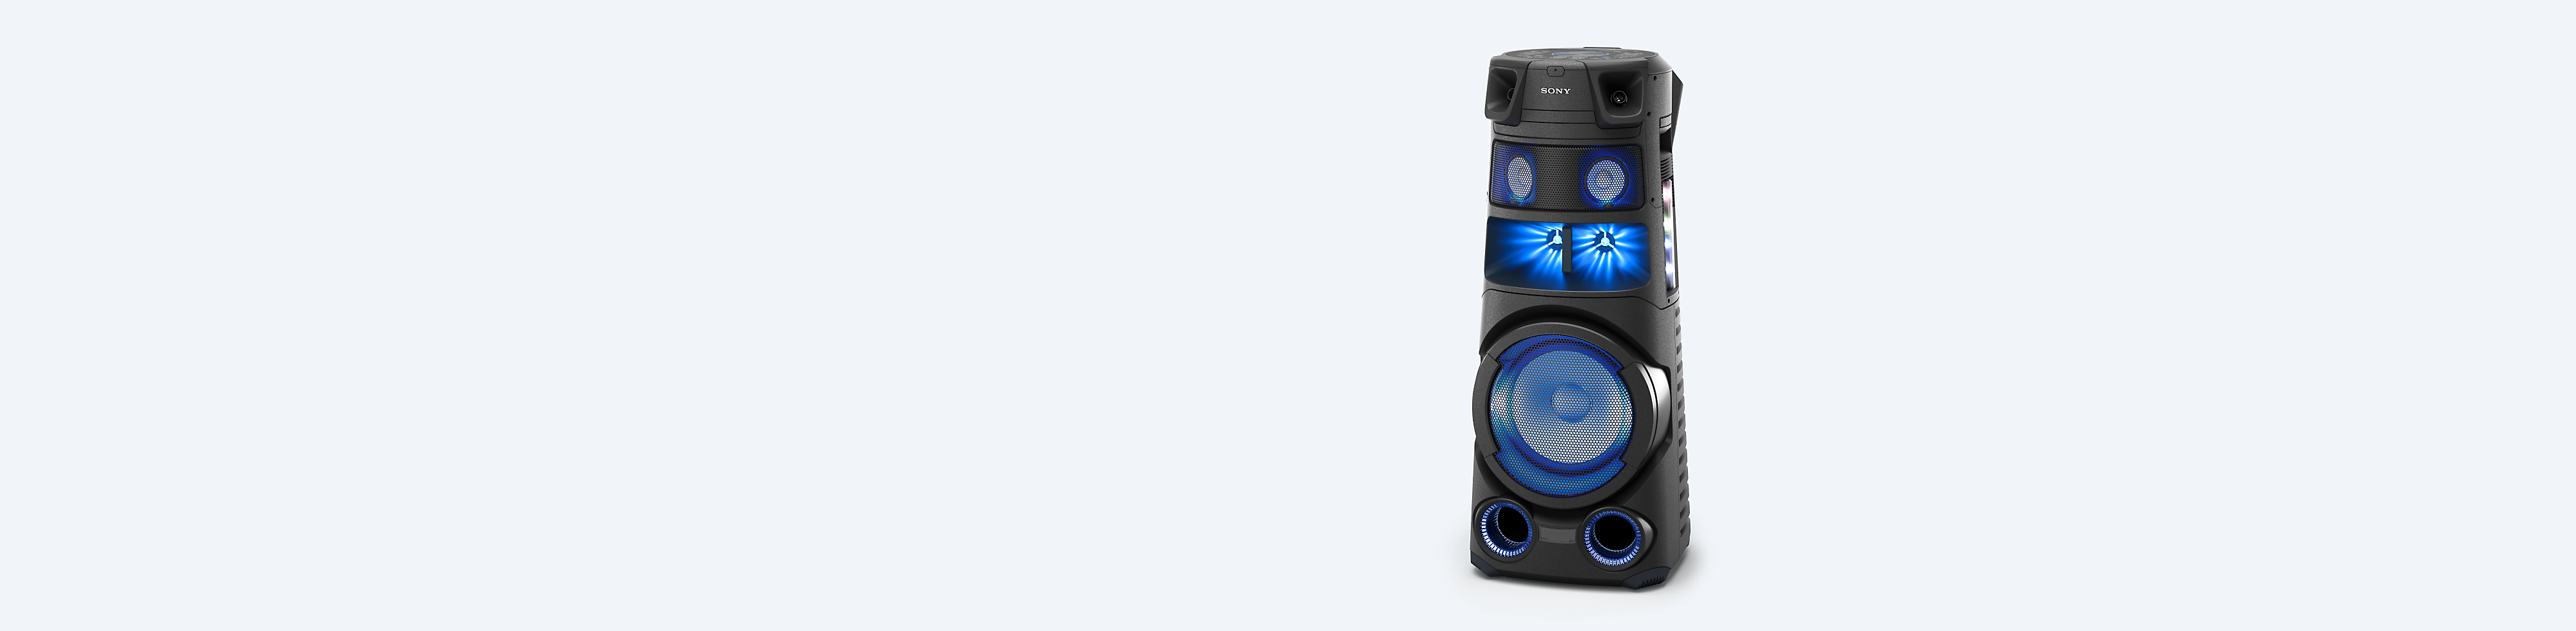 Sonyjev audiosustav visoke snage na plavoj pozadini